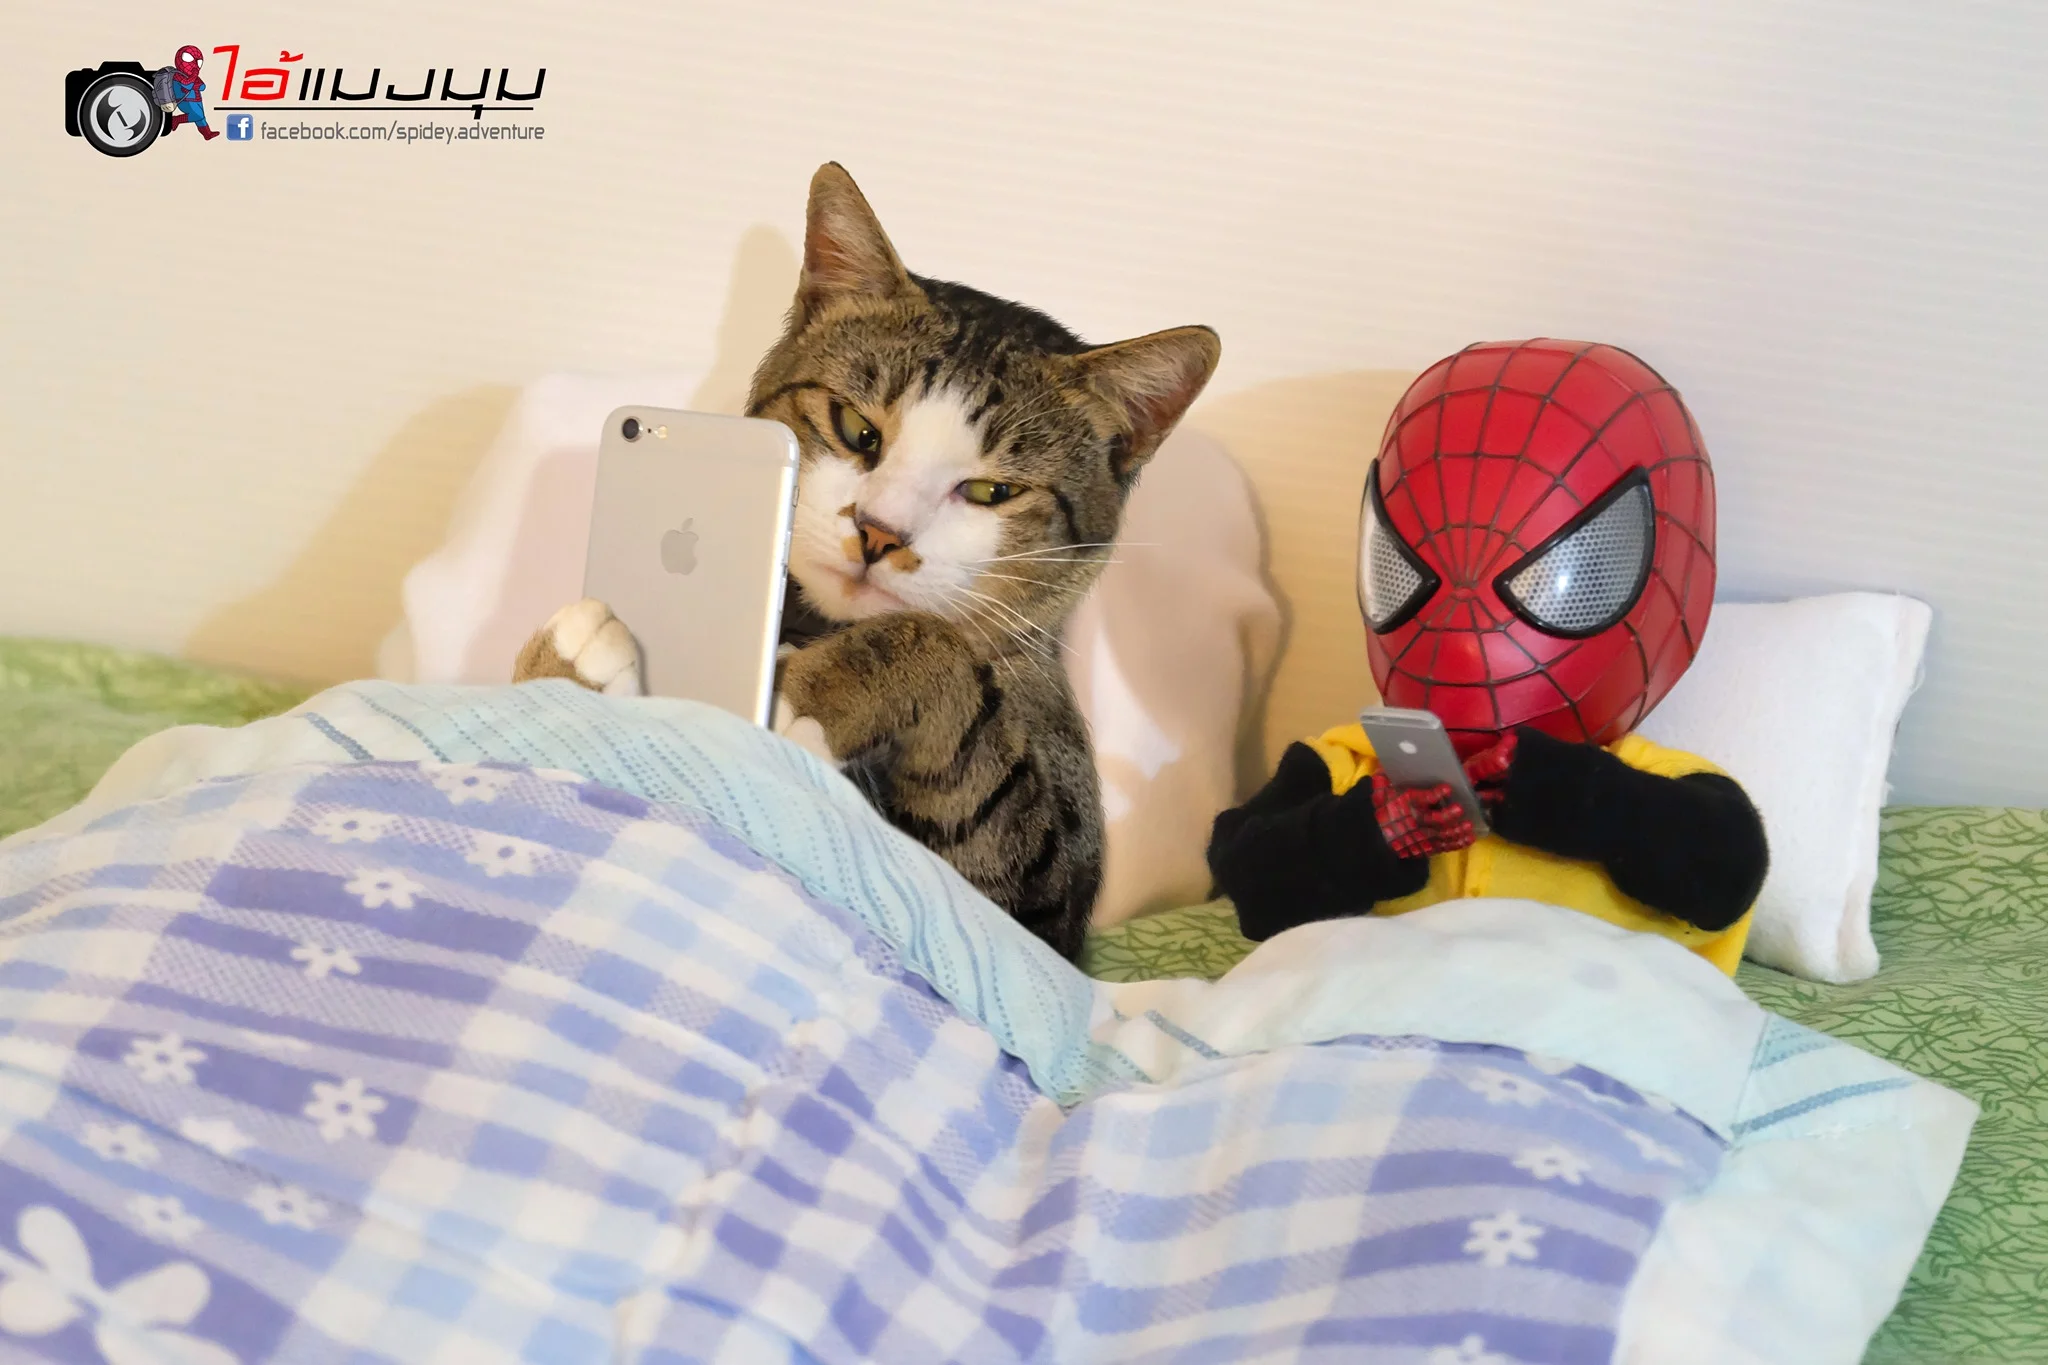 Художник добавил к фото с котиками изображение Человека-паука – это выглядит очень смешно - фото 459363